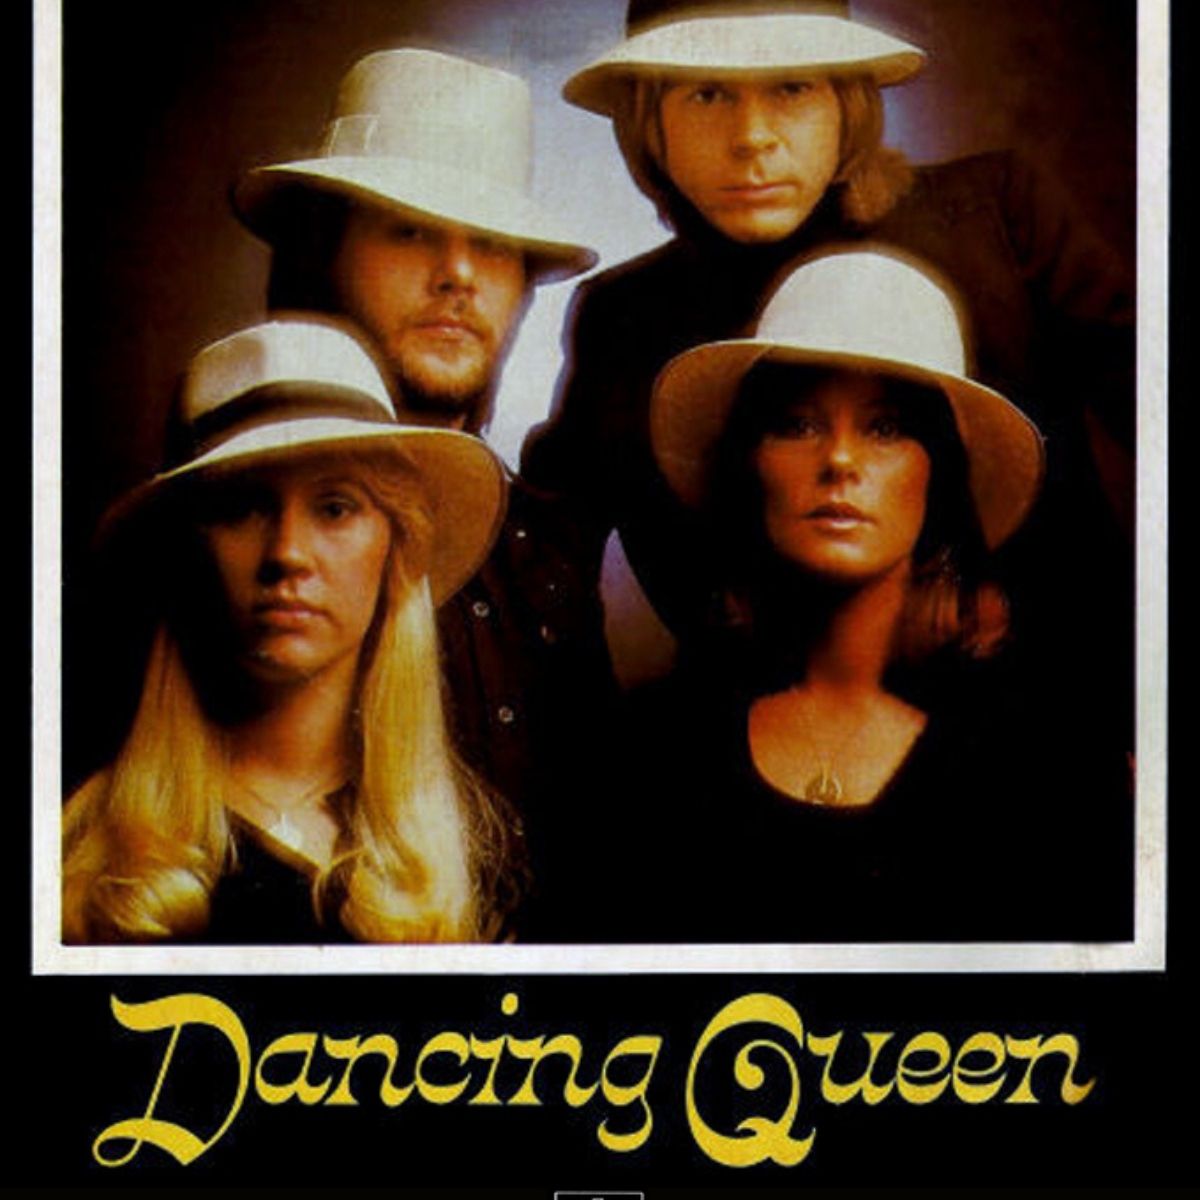 Cover für den Song "Dancing Queen" von ABBA 